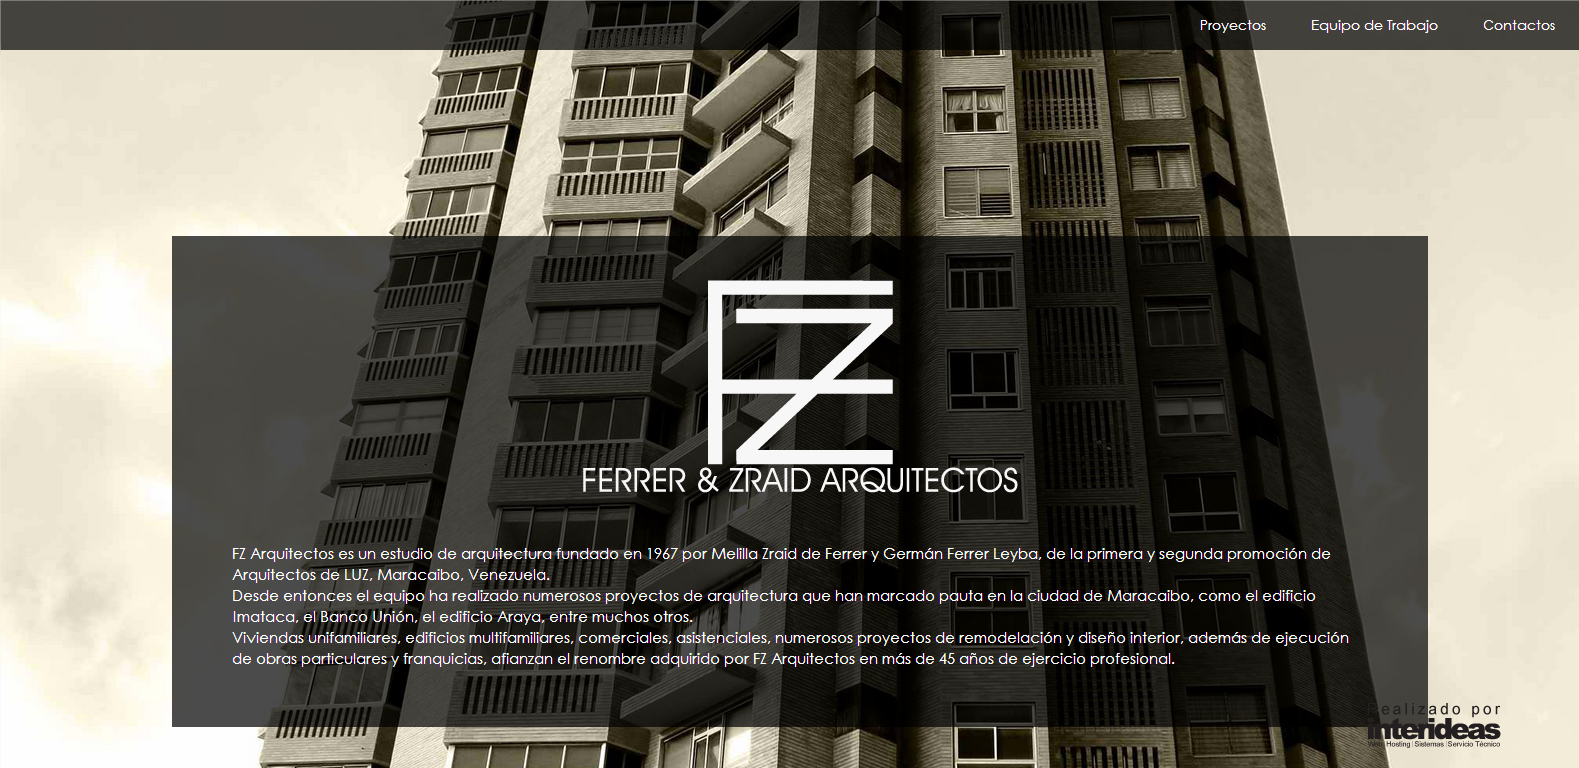 Arquitectos Ferrer & Zraid